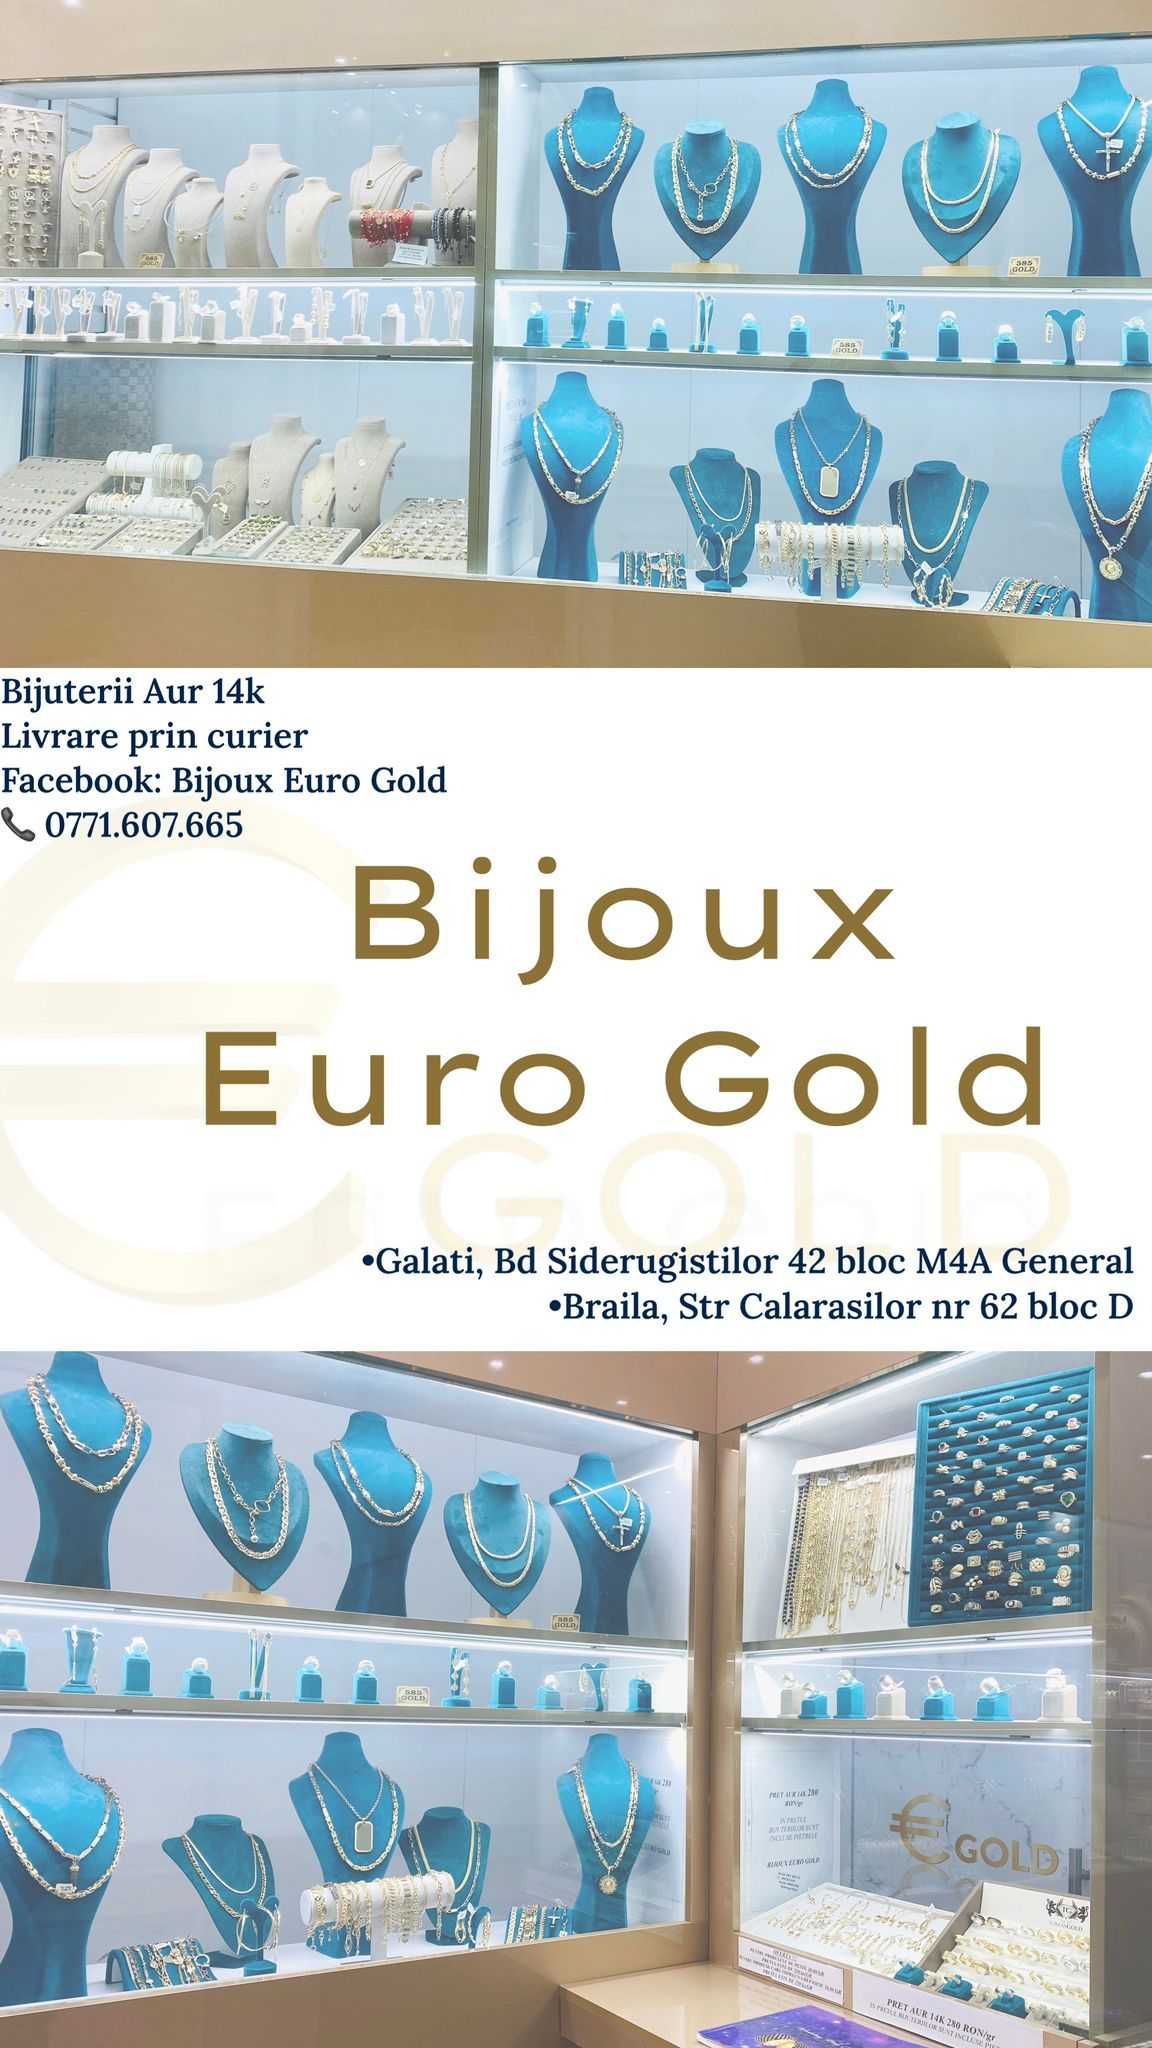 (2330) Inel Aur 14k, 1,66 grame FB Bijoux Euro Gold 320 lei gr